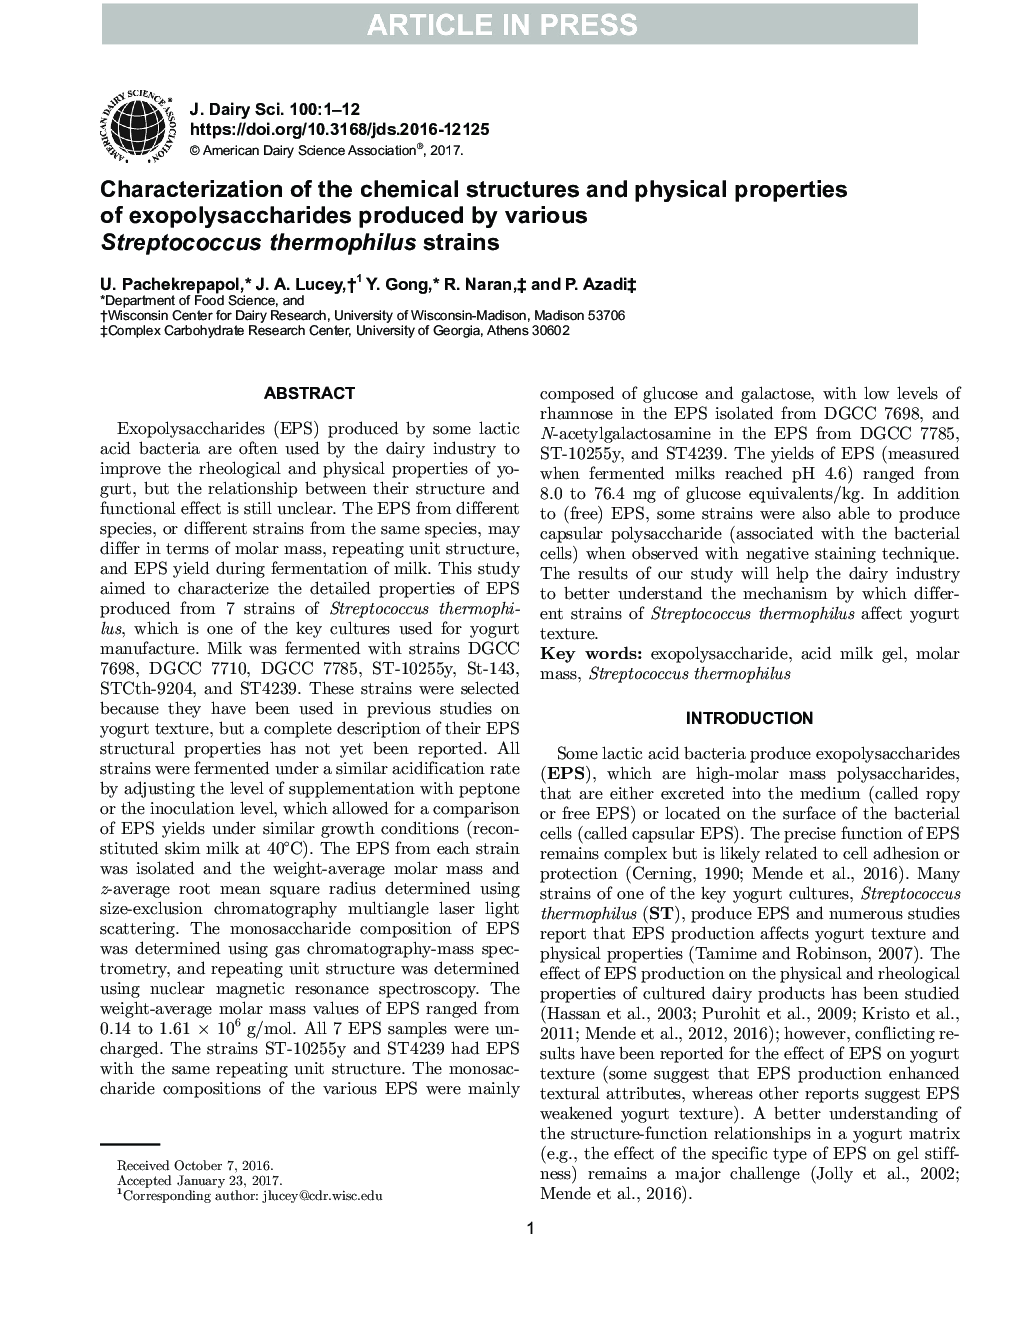 مشخصات ساختارهای شیمیایی و خواص فیزیکی اکسیپلی ساکارید های تولید شده توسط سویه های مختلف استرپتوکوک ترموفیلوس 